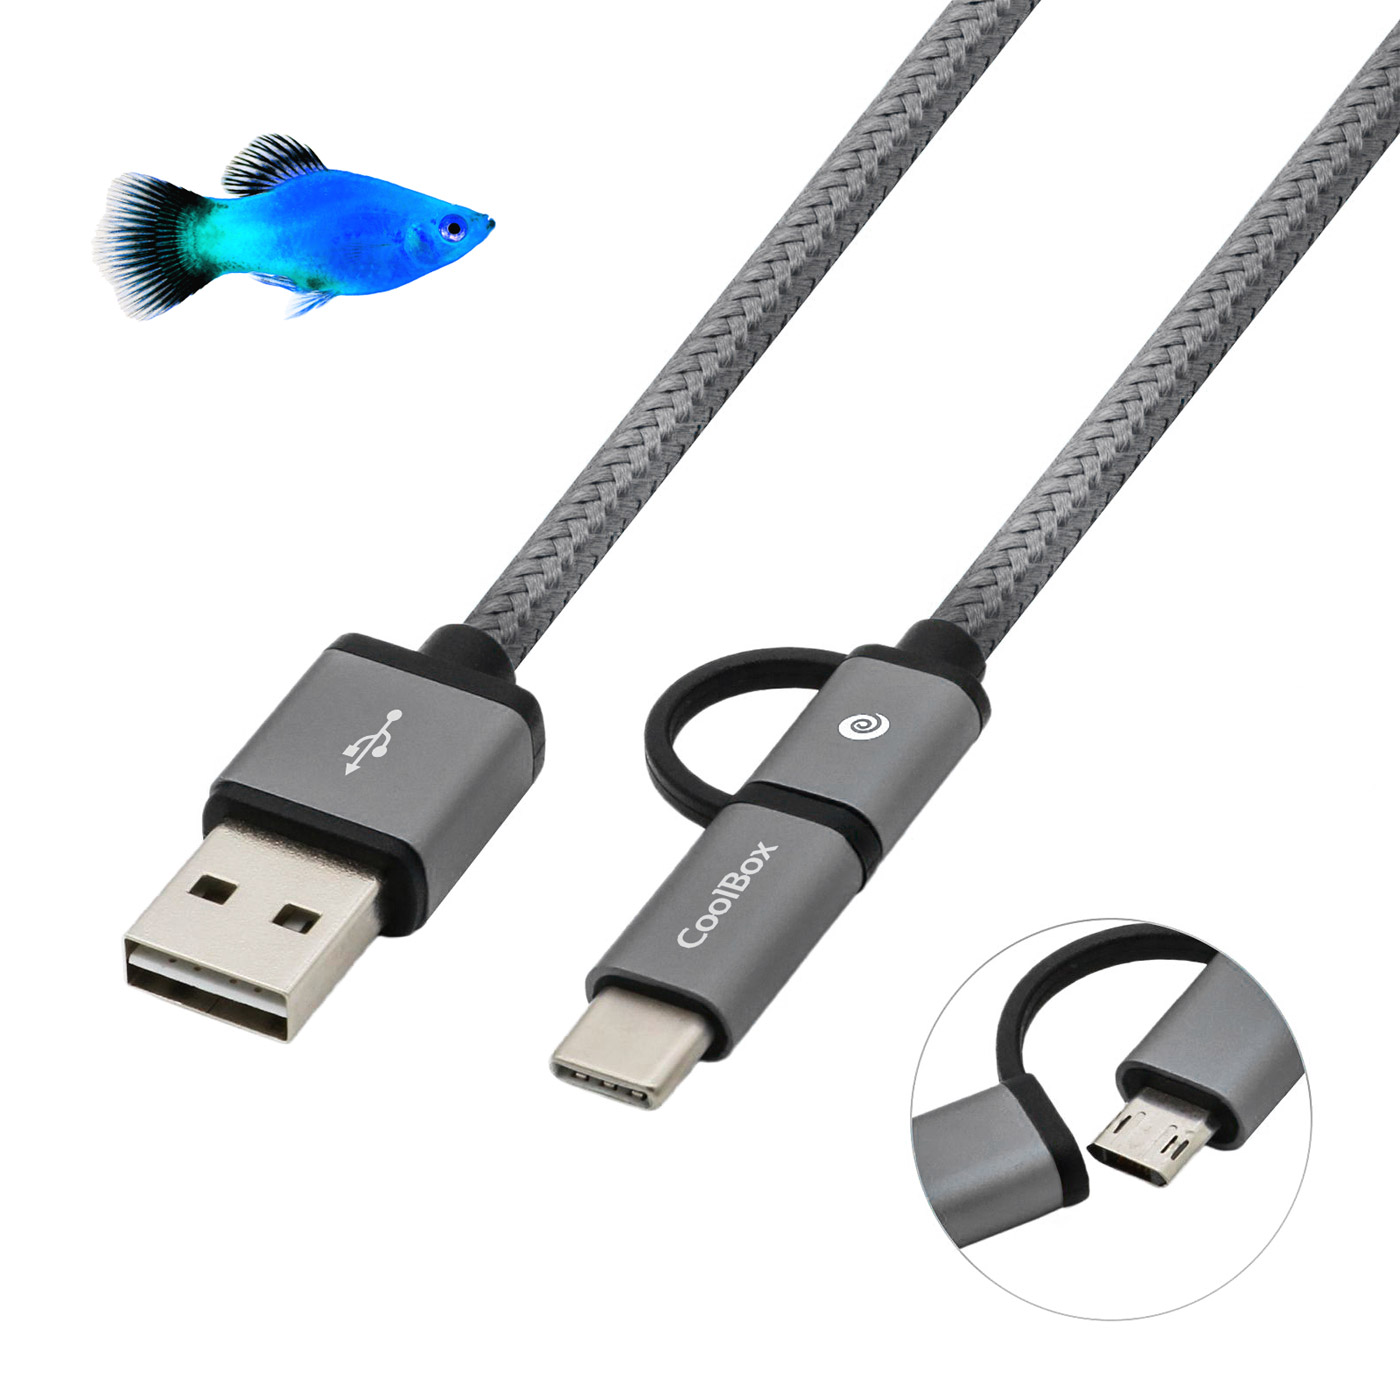 Coolbox - Cable 2 en 1 USB-C + microUSB CoolBox, Reversible, Carga + Transferencia de datos, 1m, Trenzado Anti-Enredos, Disponible en Azul y Gris